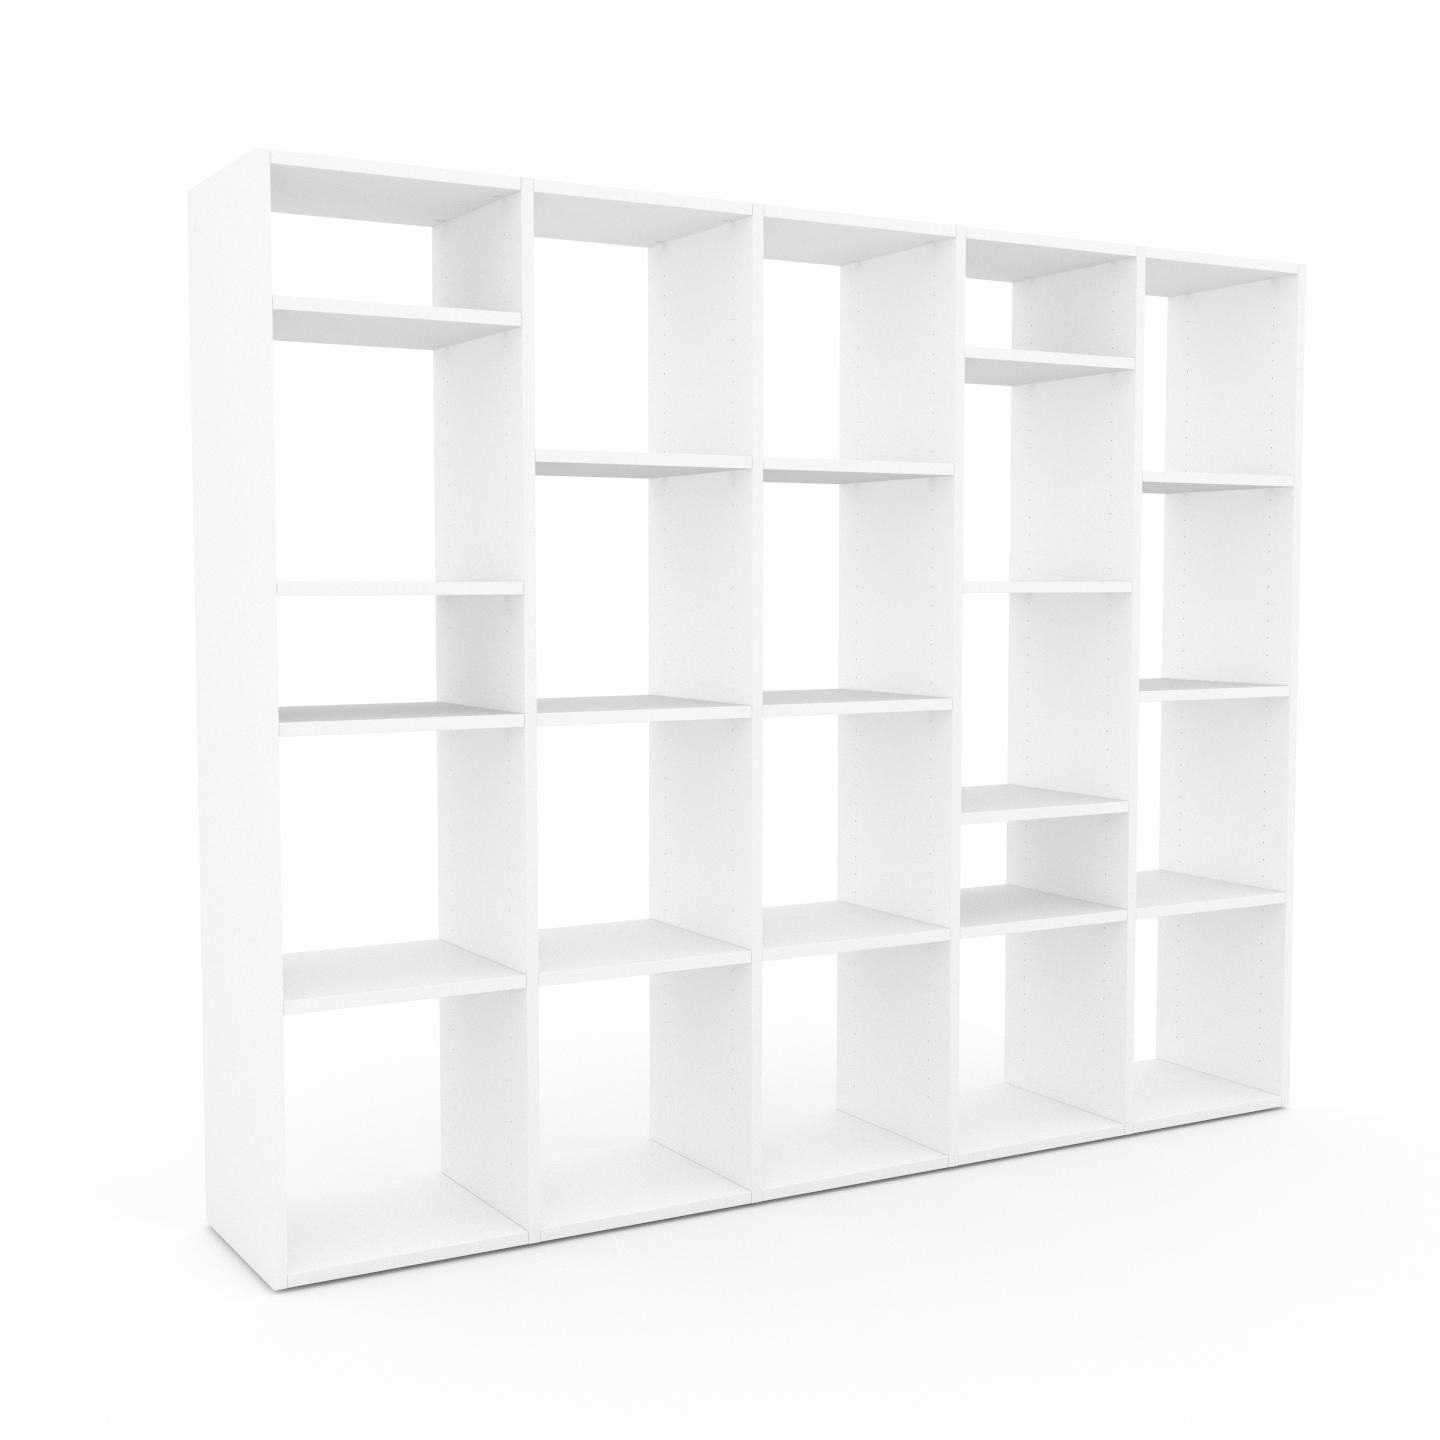 MYCS Bücherregal Weiß - Modernes Regal für Bücher: Hochwertige Qualität, einzigartiges Design - 195 x 157 x 35 cm, Individuell konfigurierbar